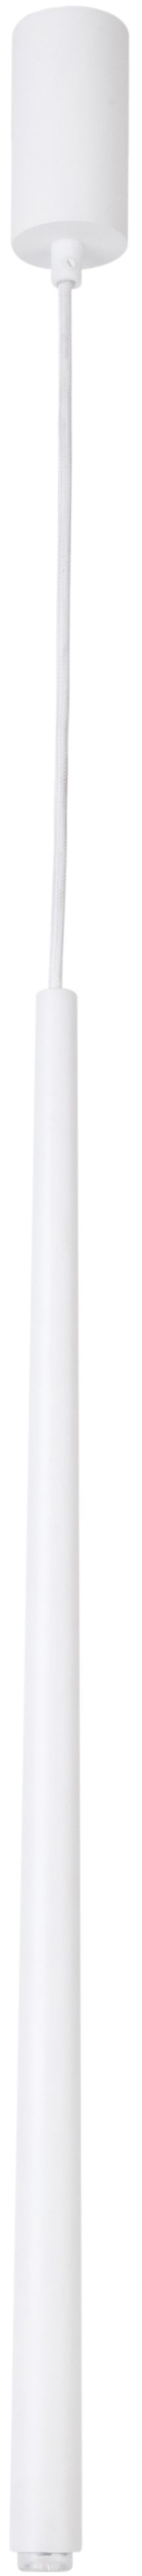 Pendellampe Weiß Metall Zylinder Modern Ø5 cm klein